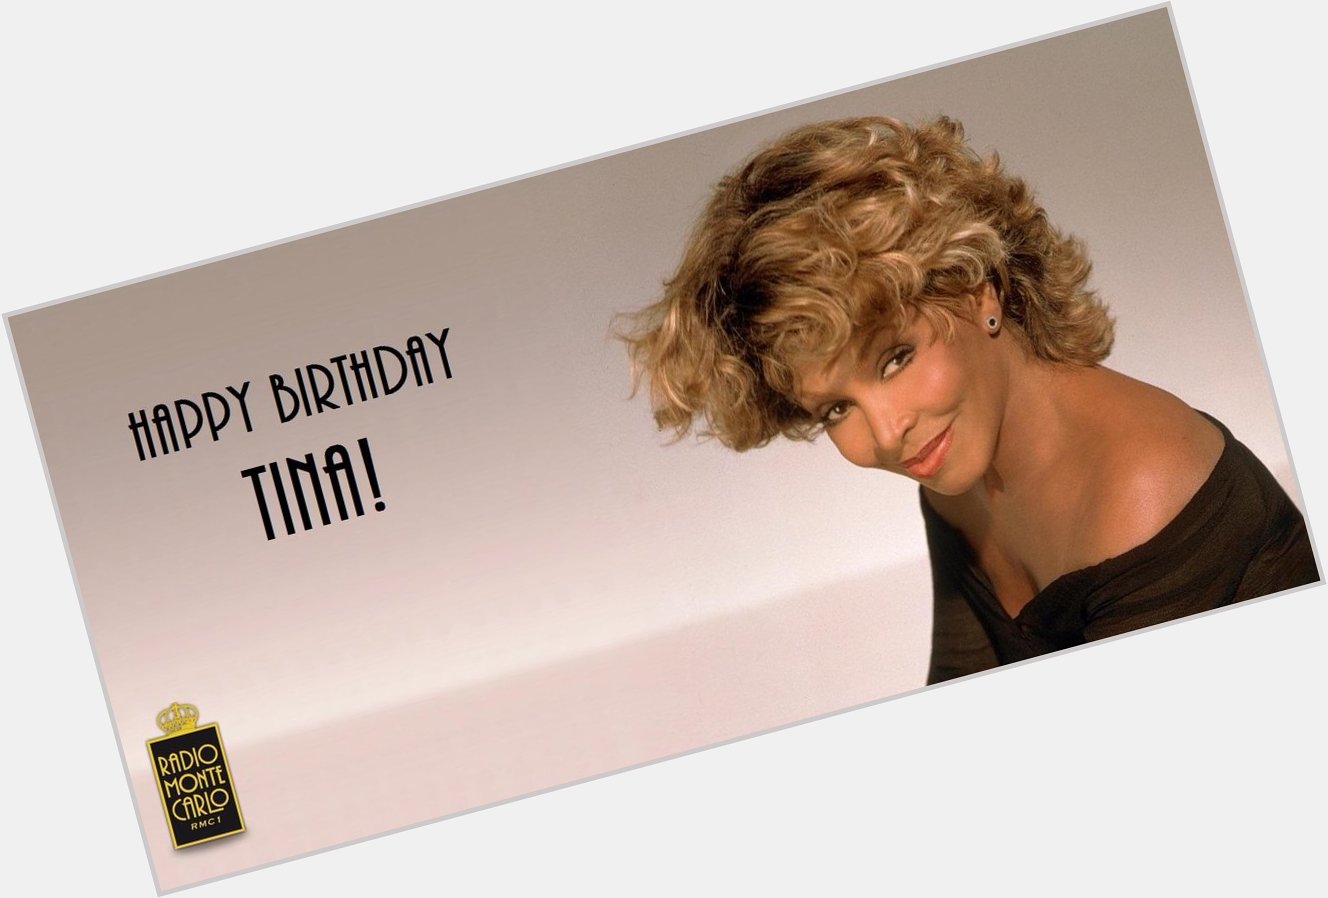 Happy Birthday Tina Turner!  Ascolta le sue più belle canzoni e guarda la gallery:  